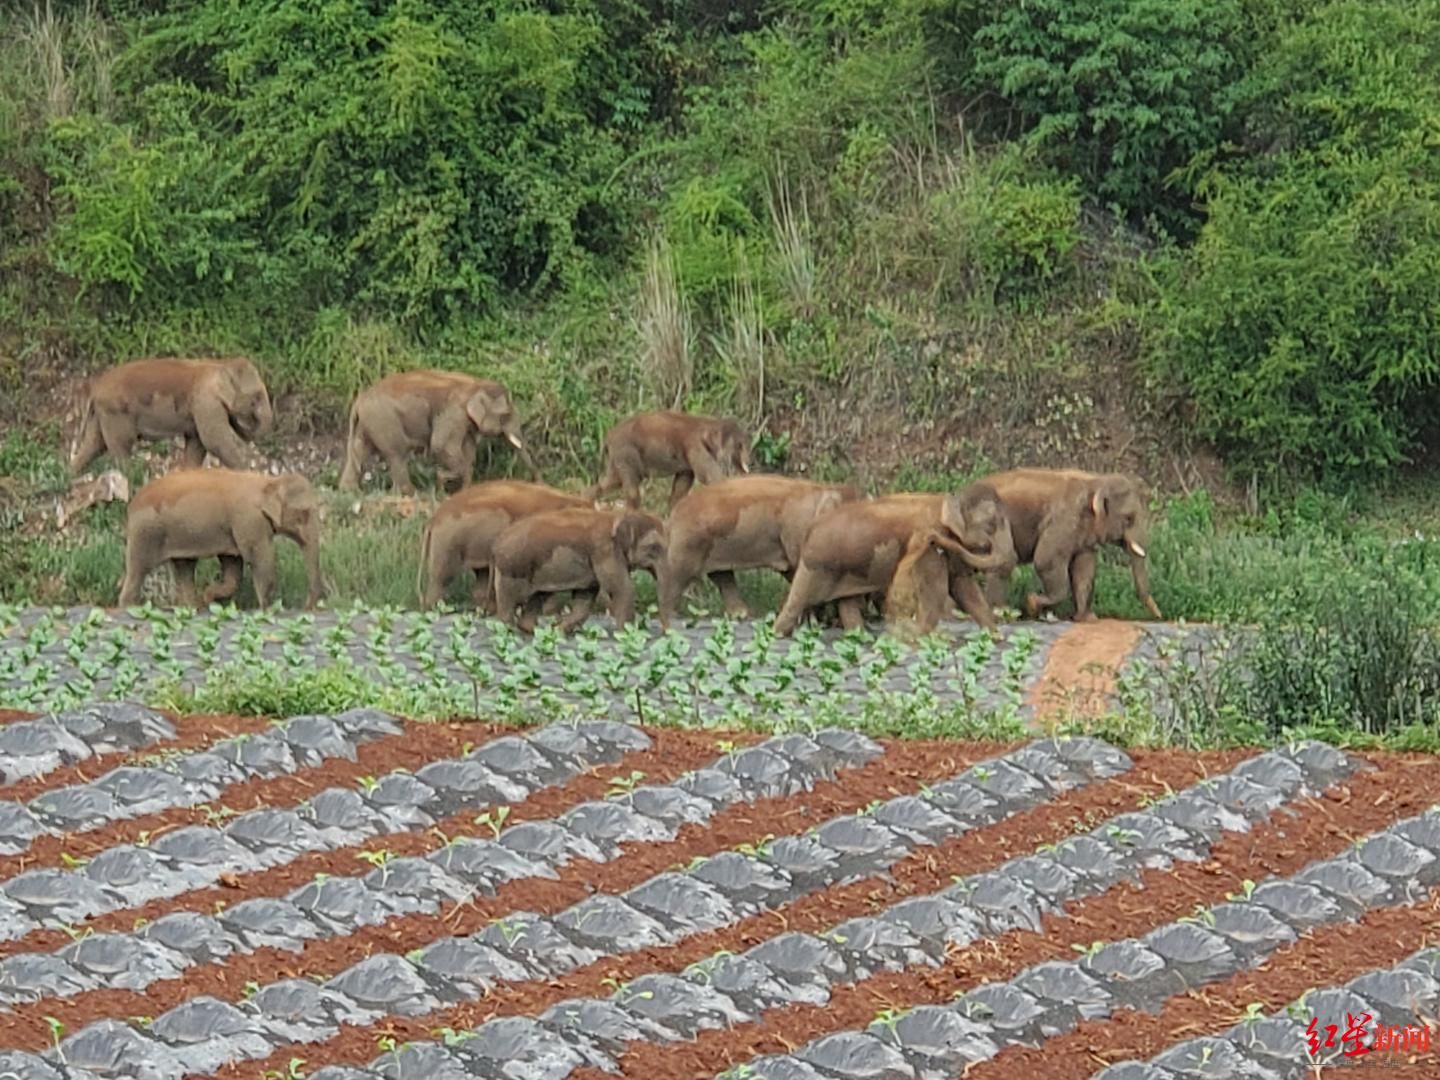 围堵加食诱，15头亚洲象饱食后沿着昆明宝夕公路向南移动